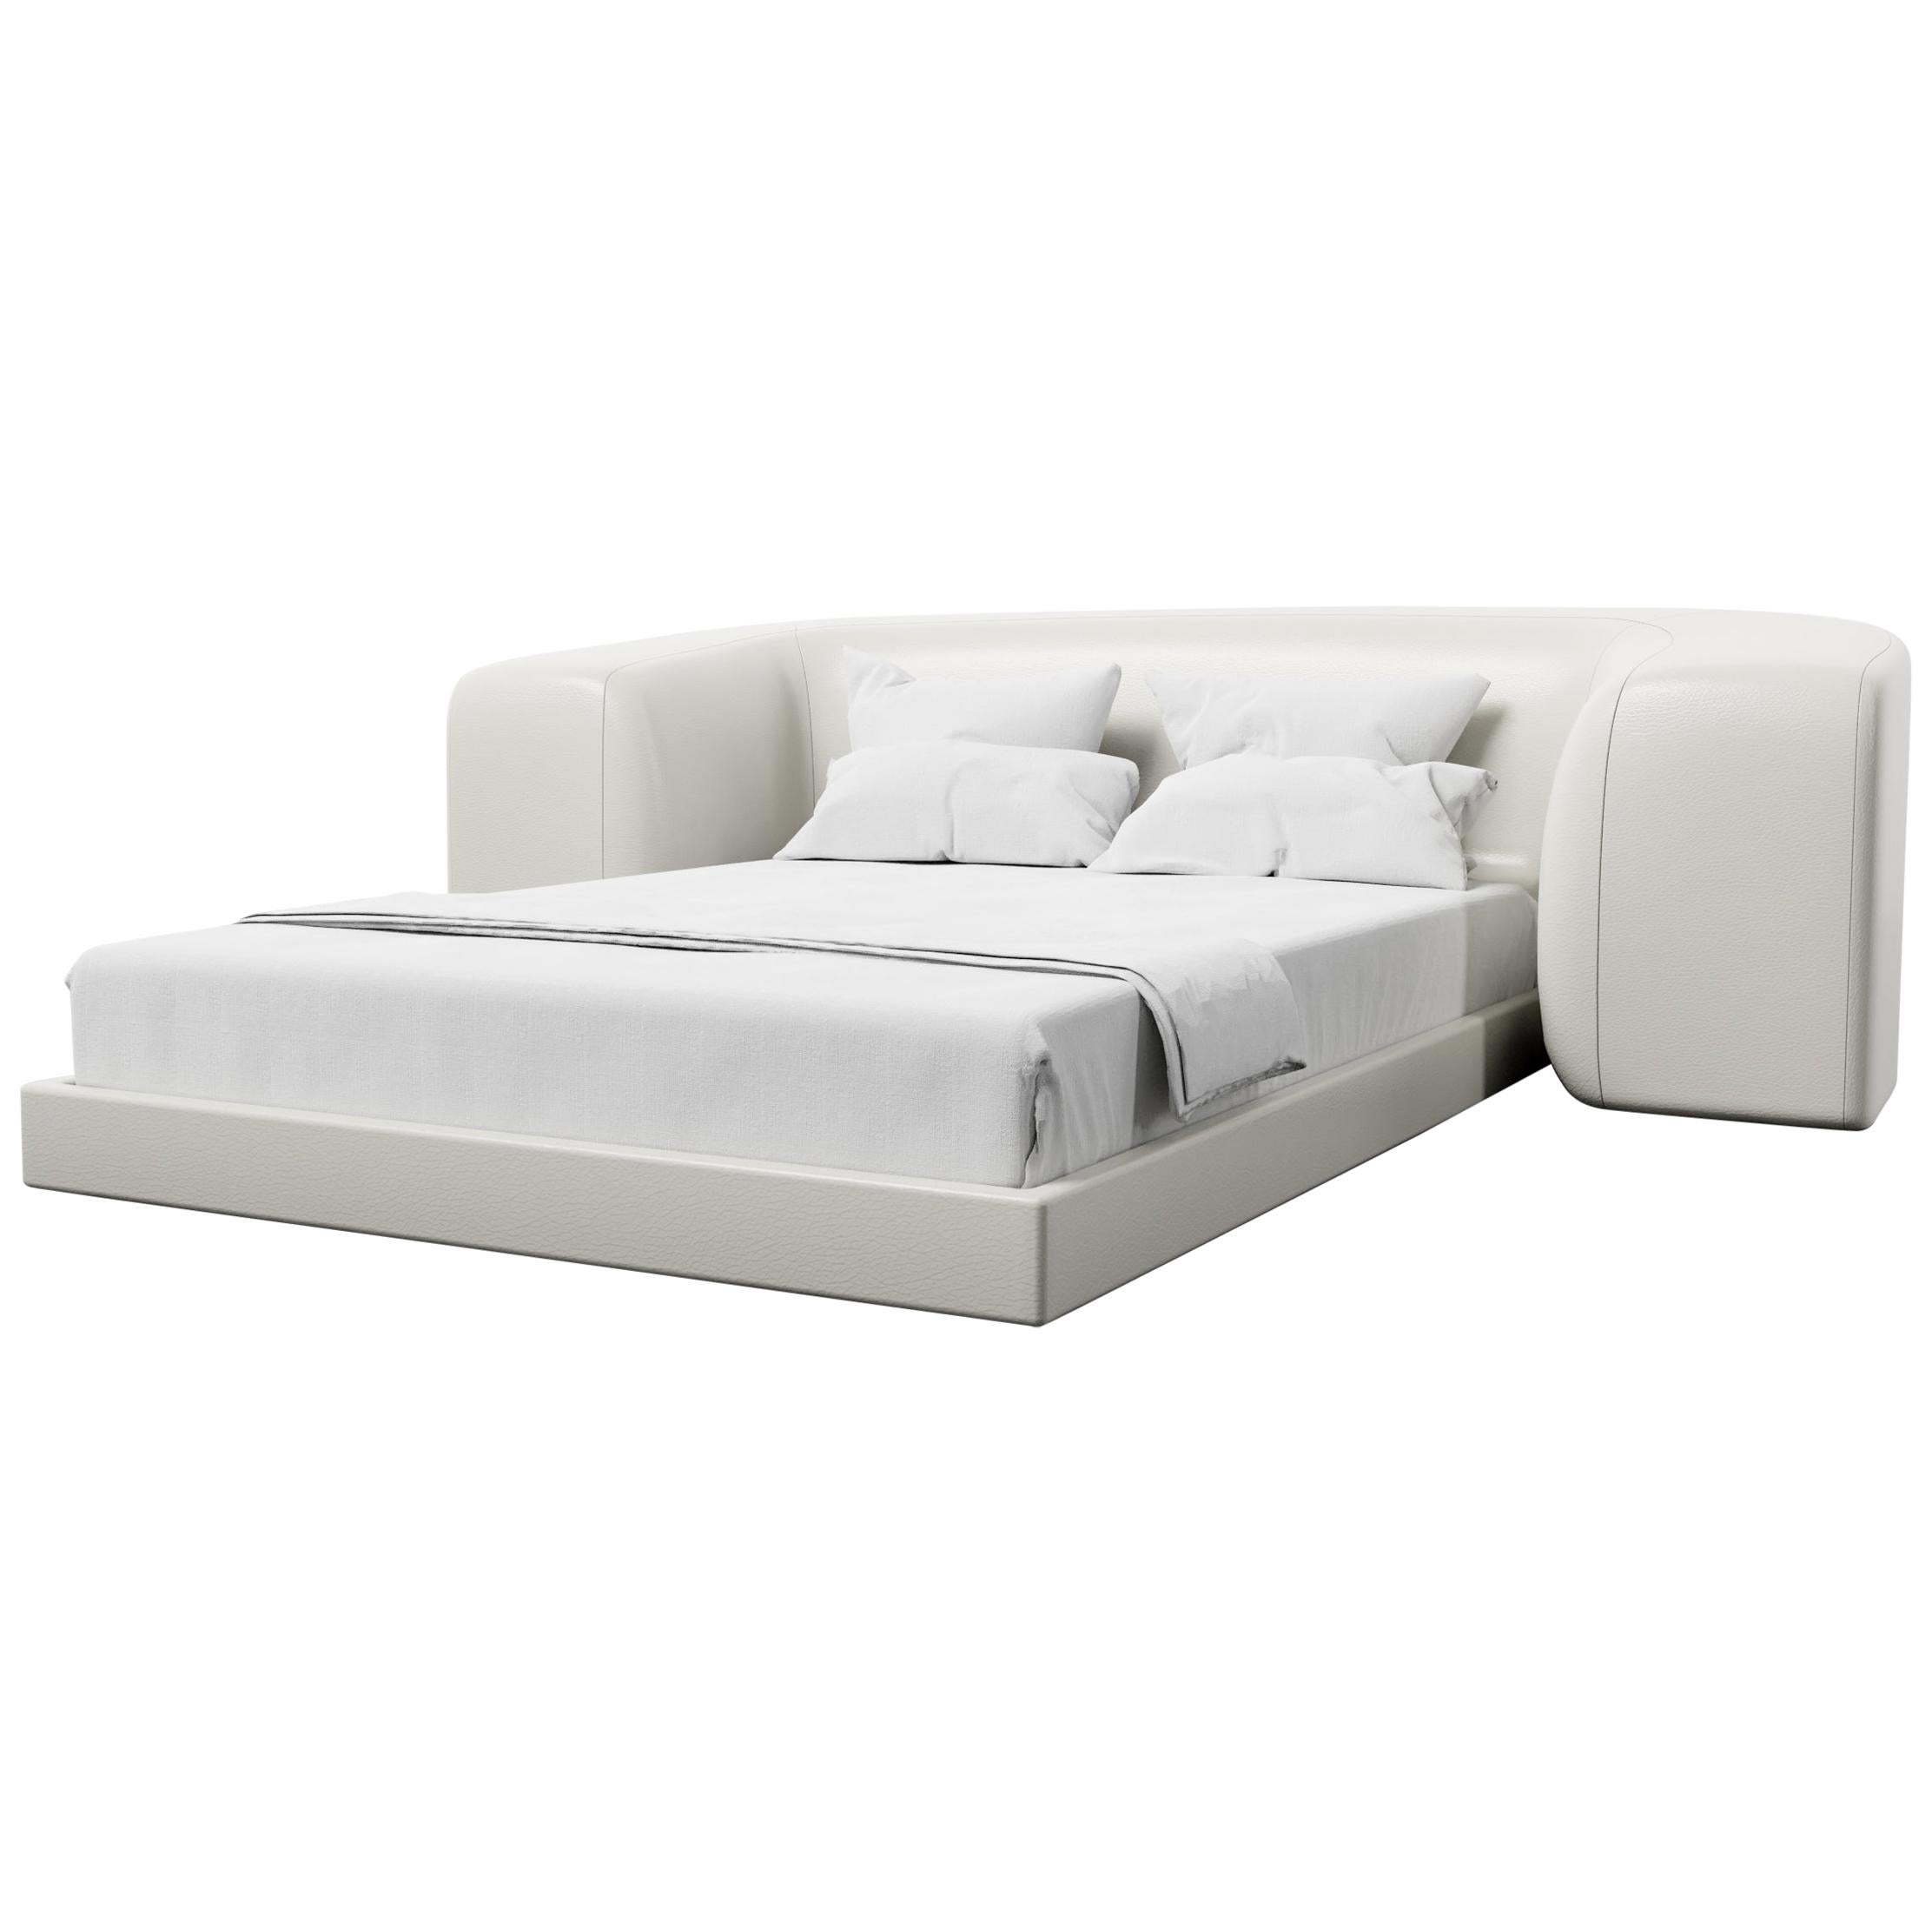 Float Bed Modern Platform In Faux, White Leather Platform King Bed